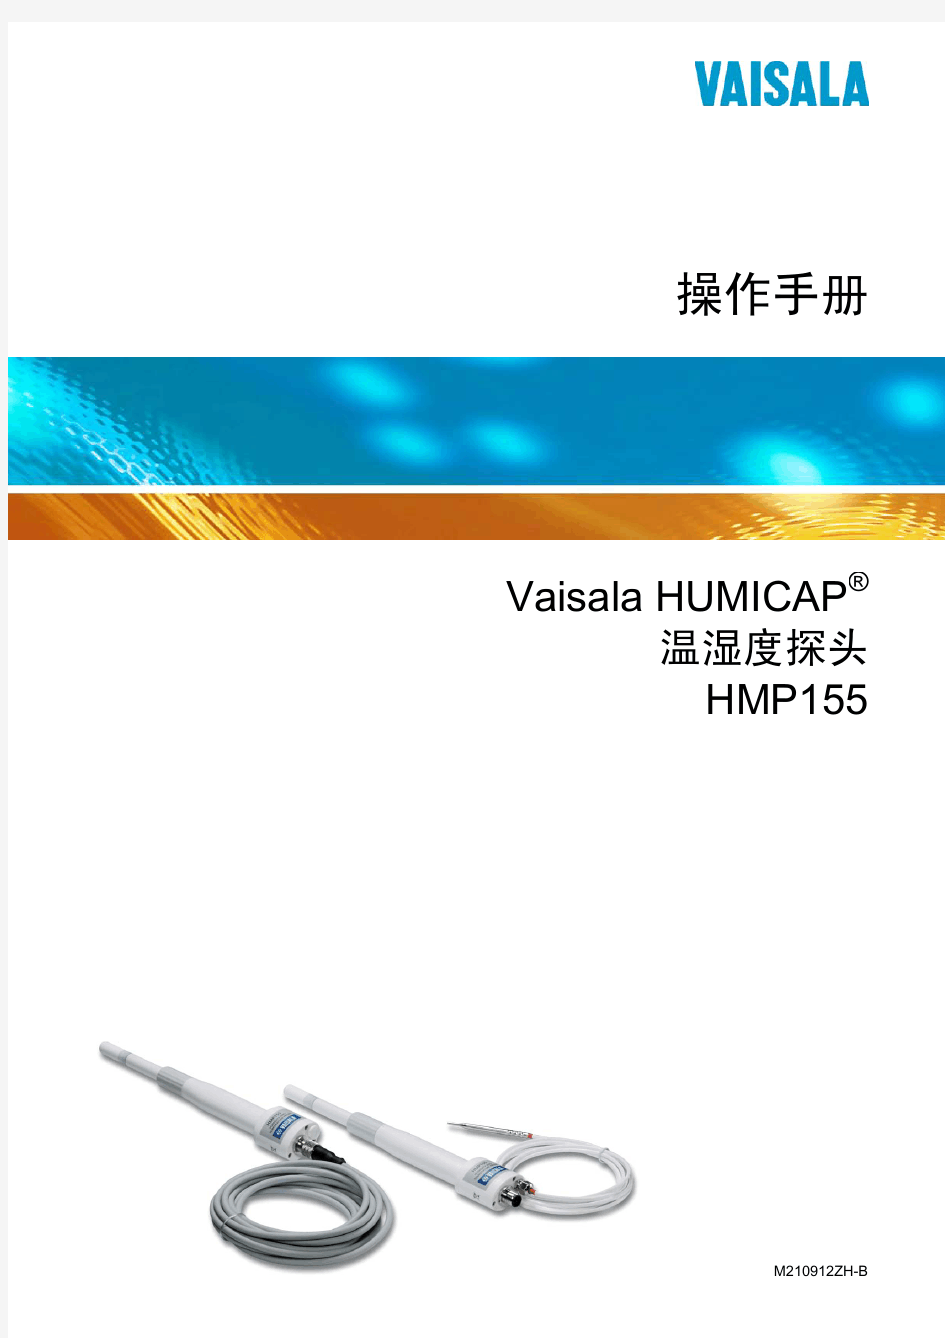 维萨拉 HMP155 温湿度计中文手册 M210912ZH-B